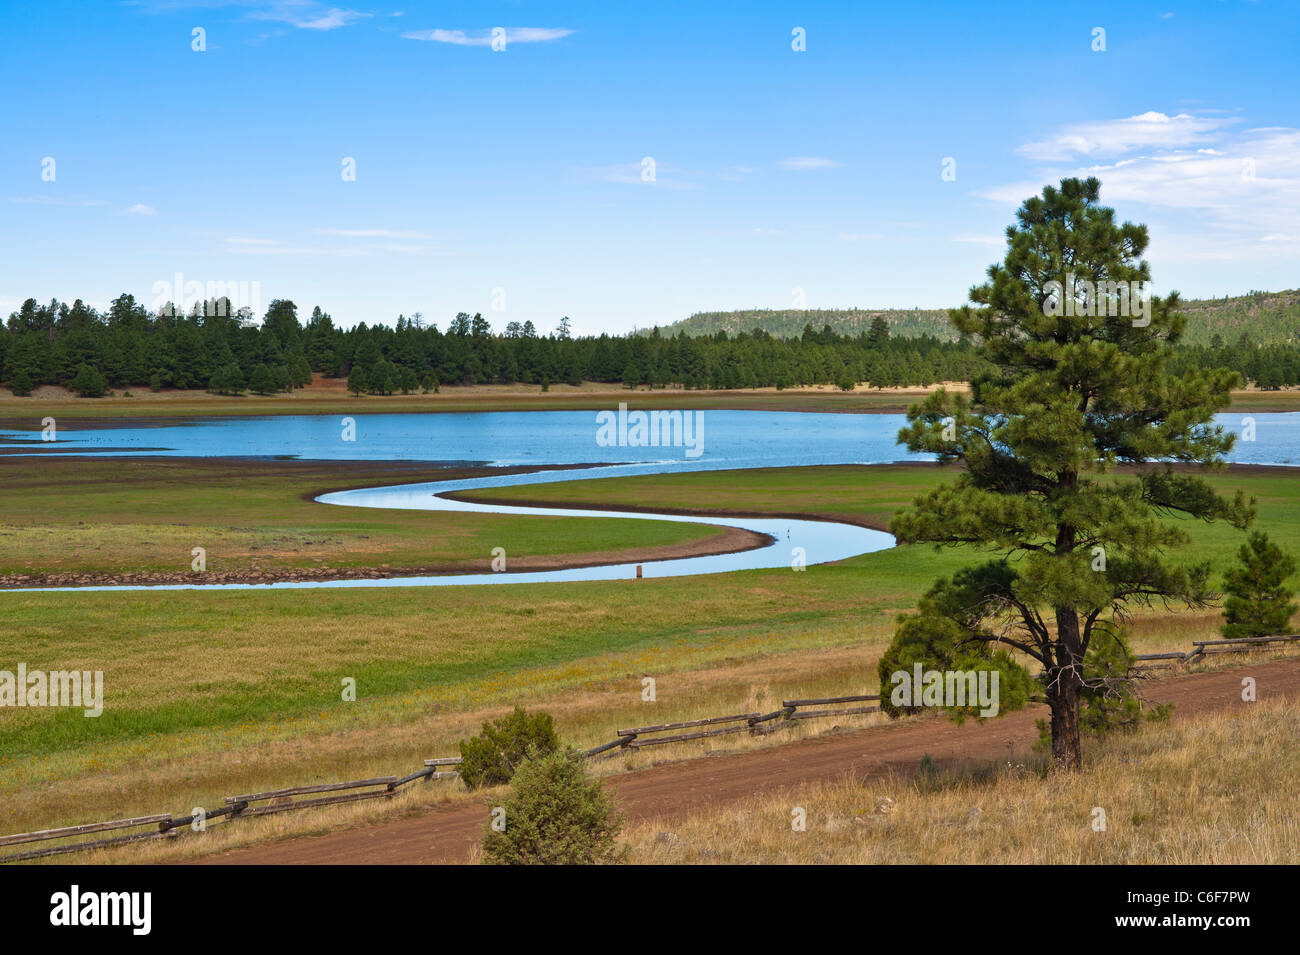 Lake Mary può fare riferimento a uno dei due serbatoi in Northern Arizona, a sud-est di Flagstaff. Foto Stock